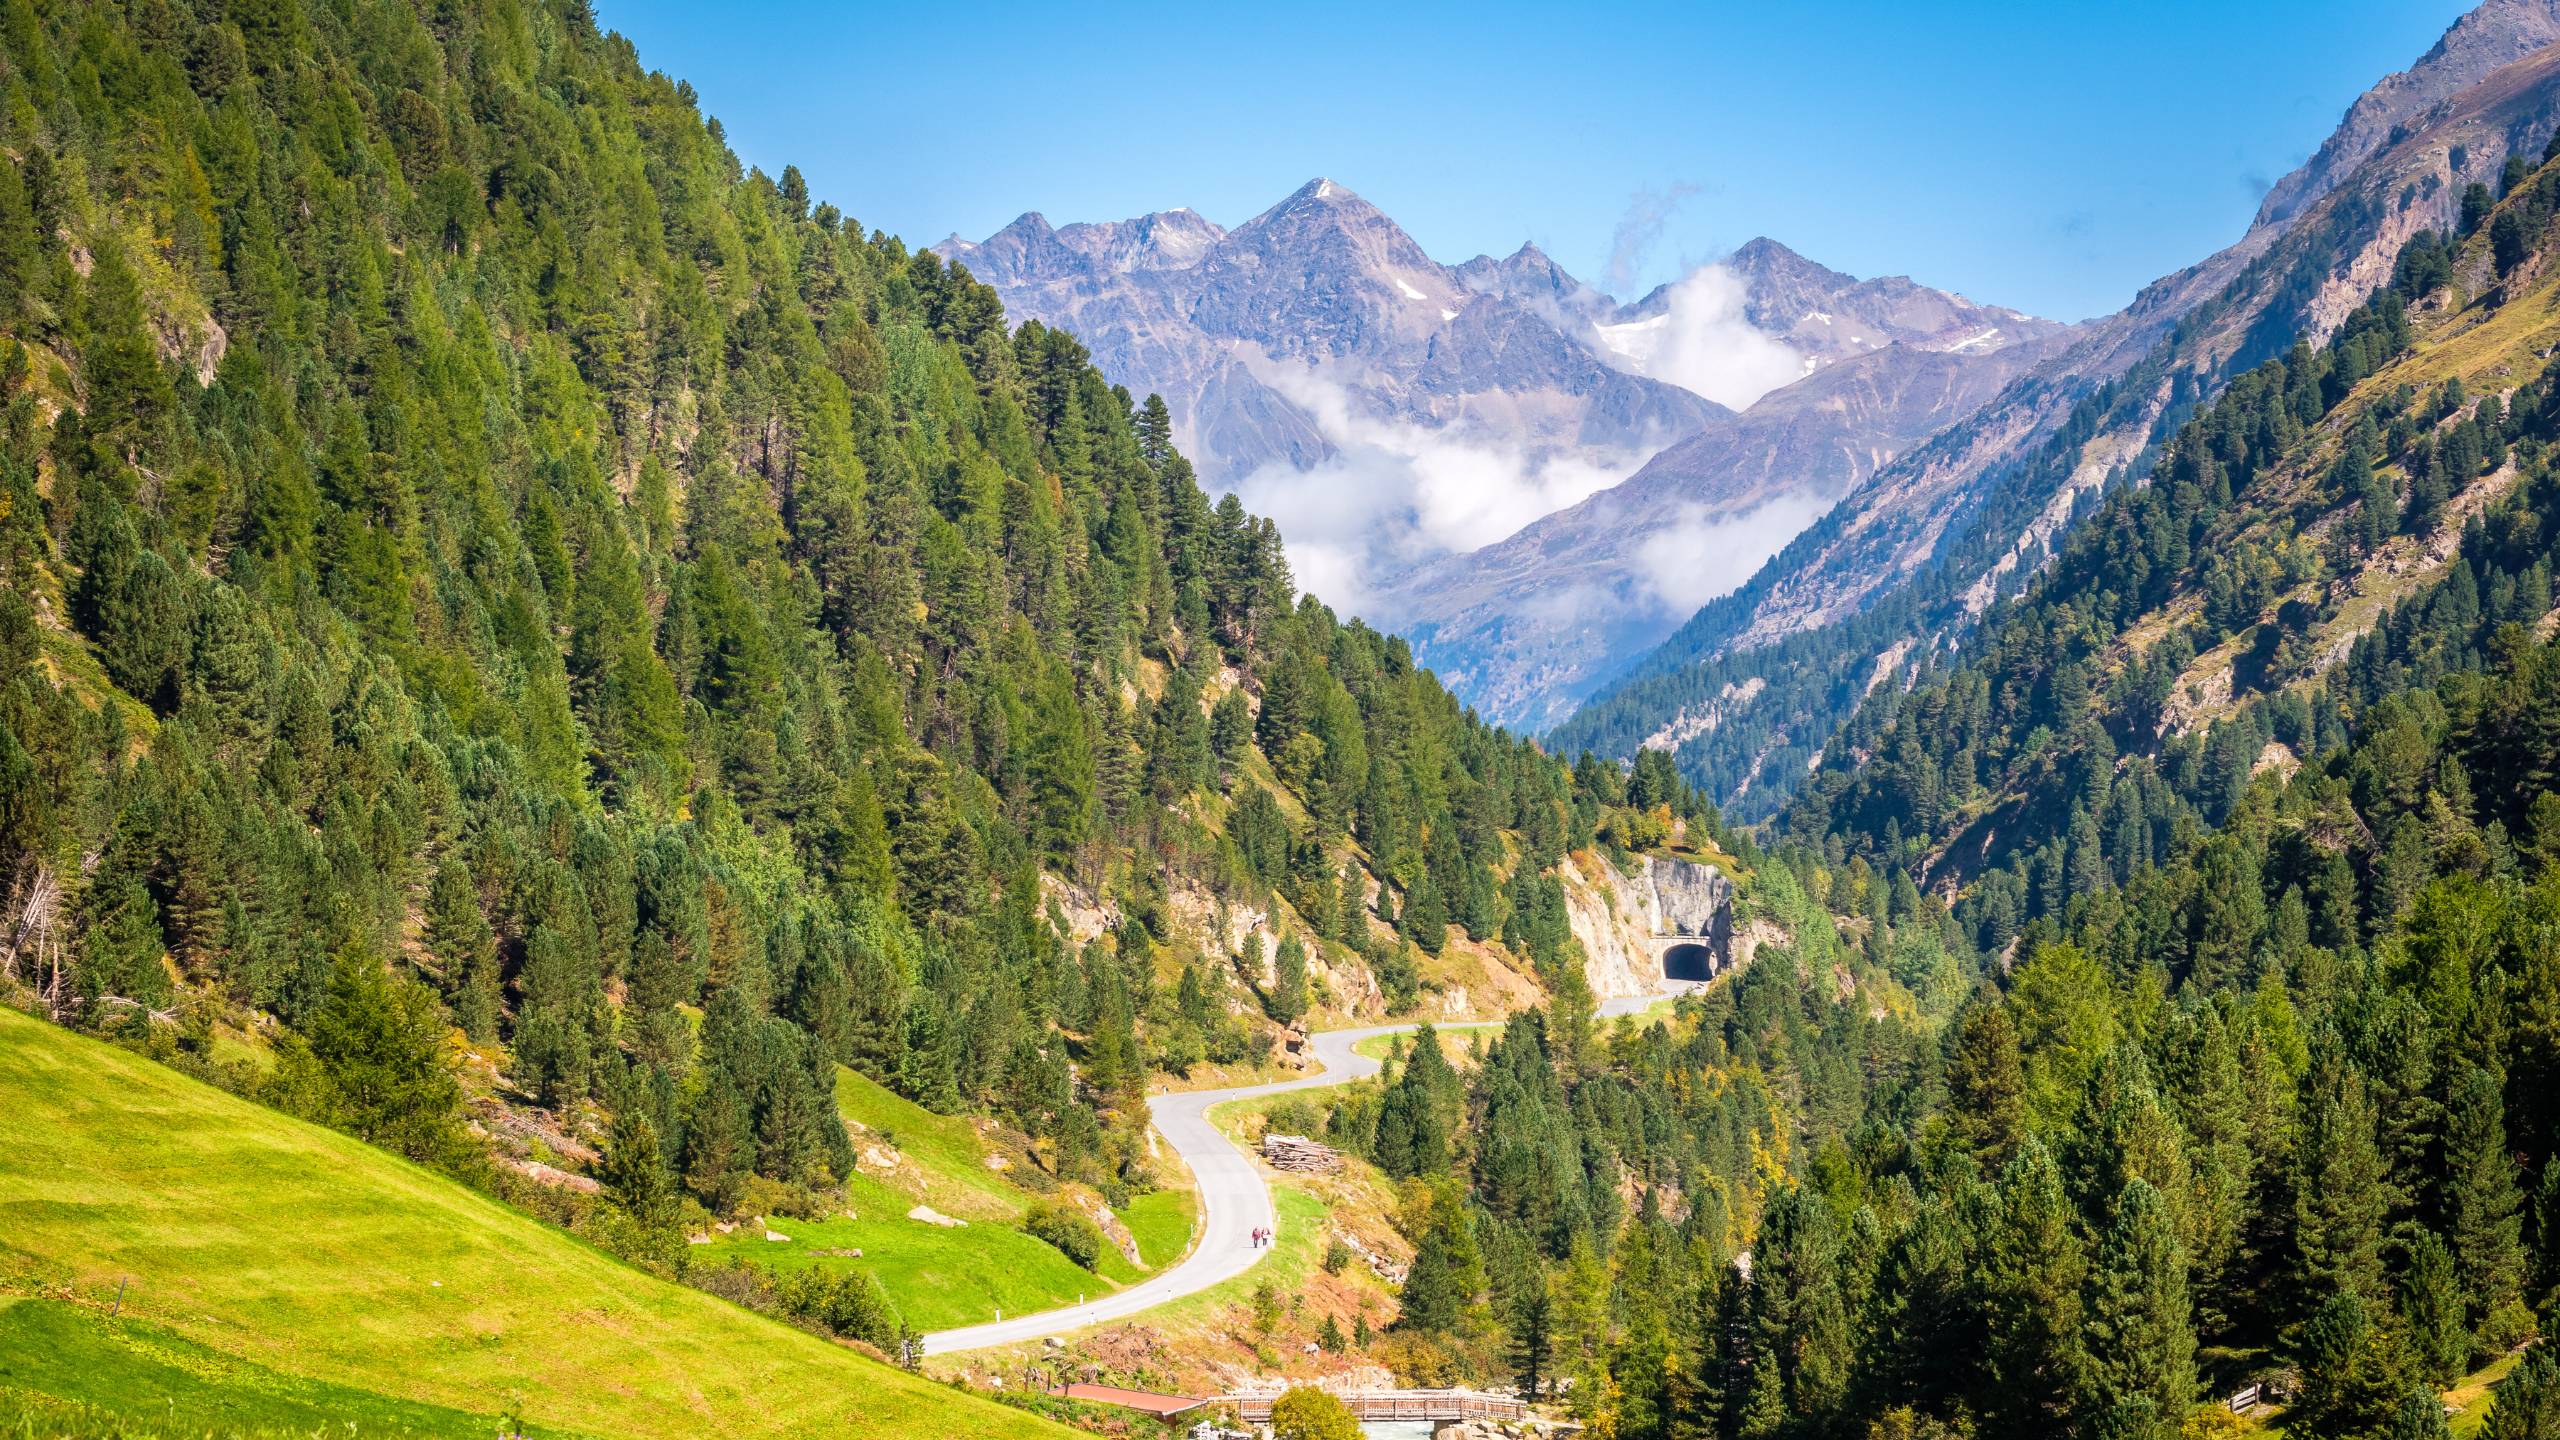 Grüne Wiesen in der Nähe des idyllischen Bergsteigerdorfes Vent im Ötztal (Tirol, Österreich), umgeben von Bergen und idealer Ausgangspunkt für alpine Wanderungen in der Nähe der Wildspitze (3.774 m)